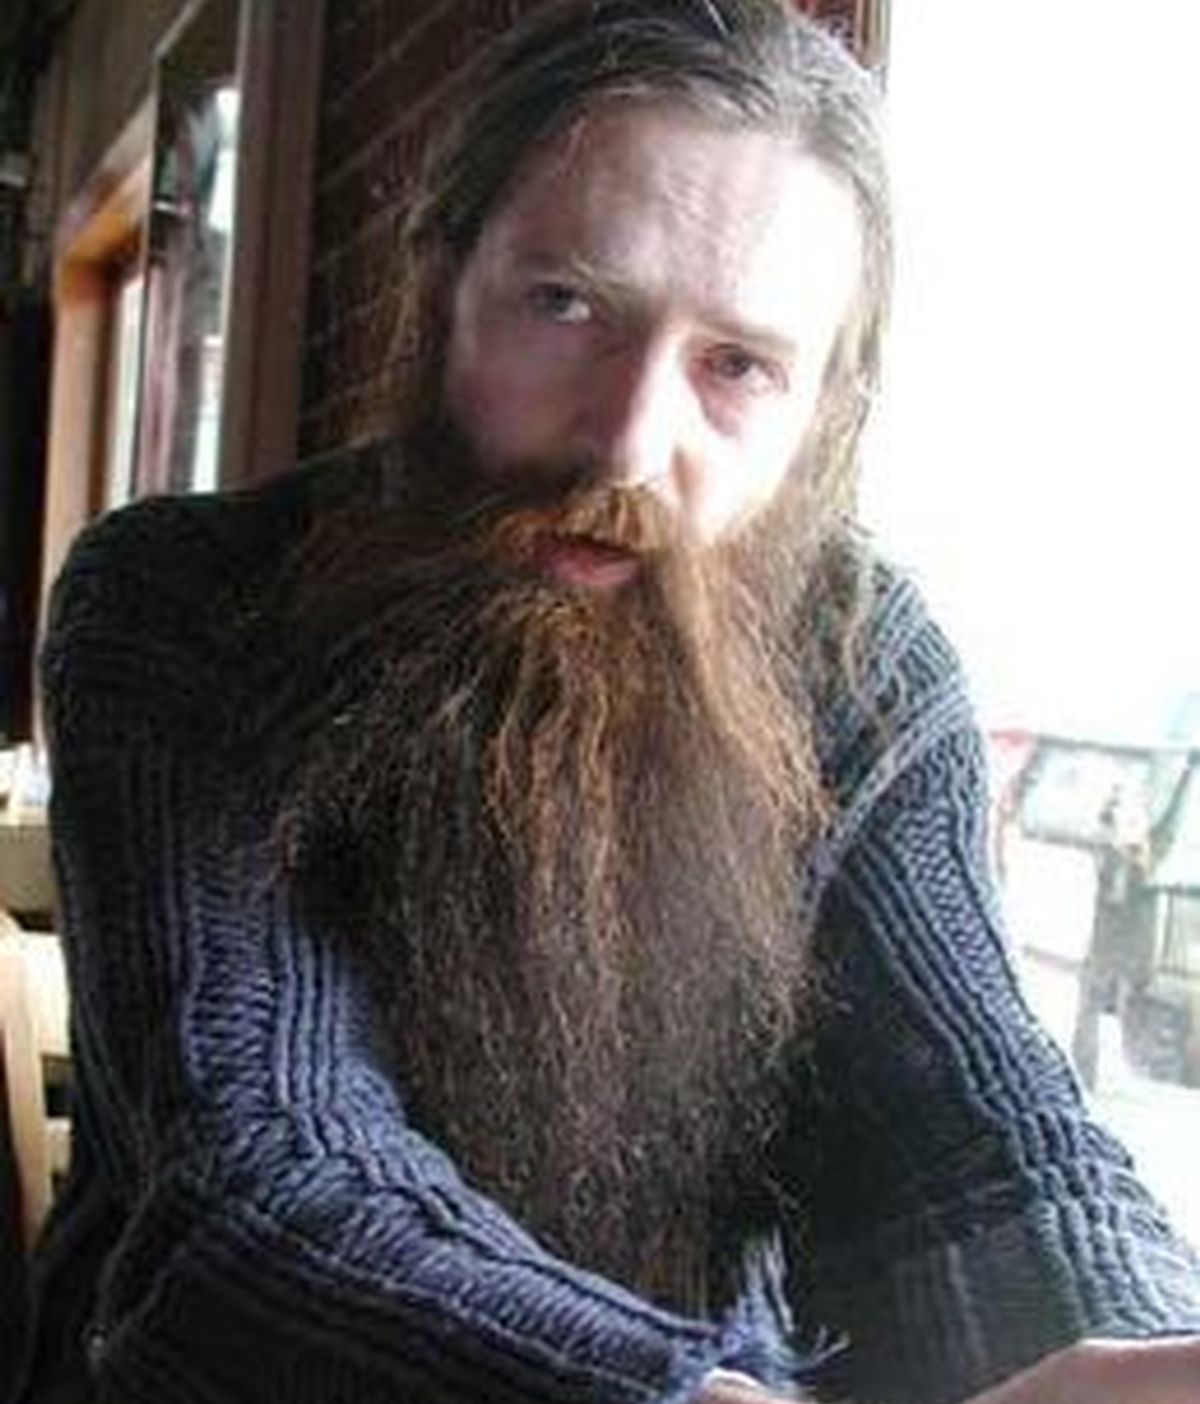 Aubrey de Grey confía en que su teoría puede evitar el envejecimiento y con ello prolongar la vida humana hasta los 1.000 años. Foto Wikipedia.